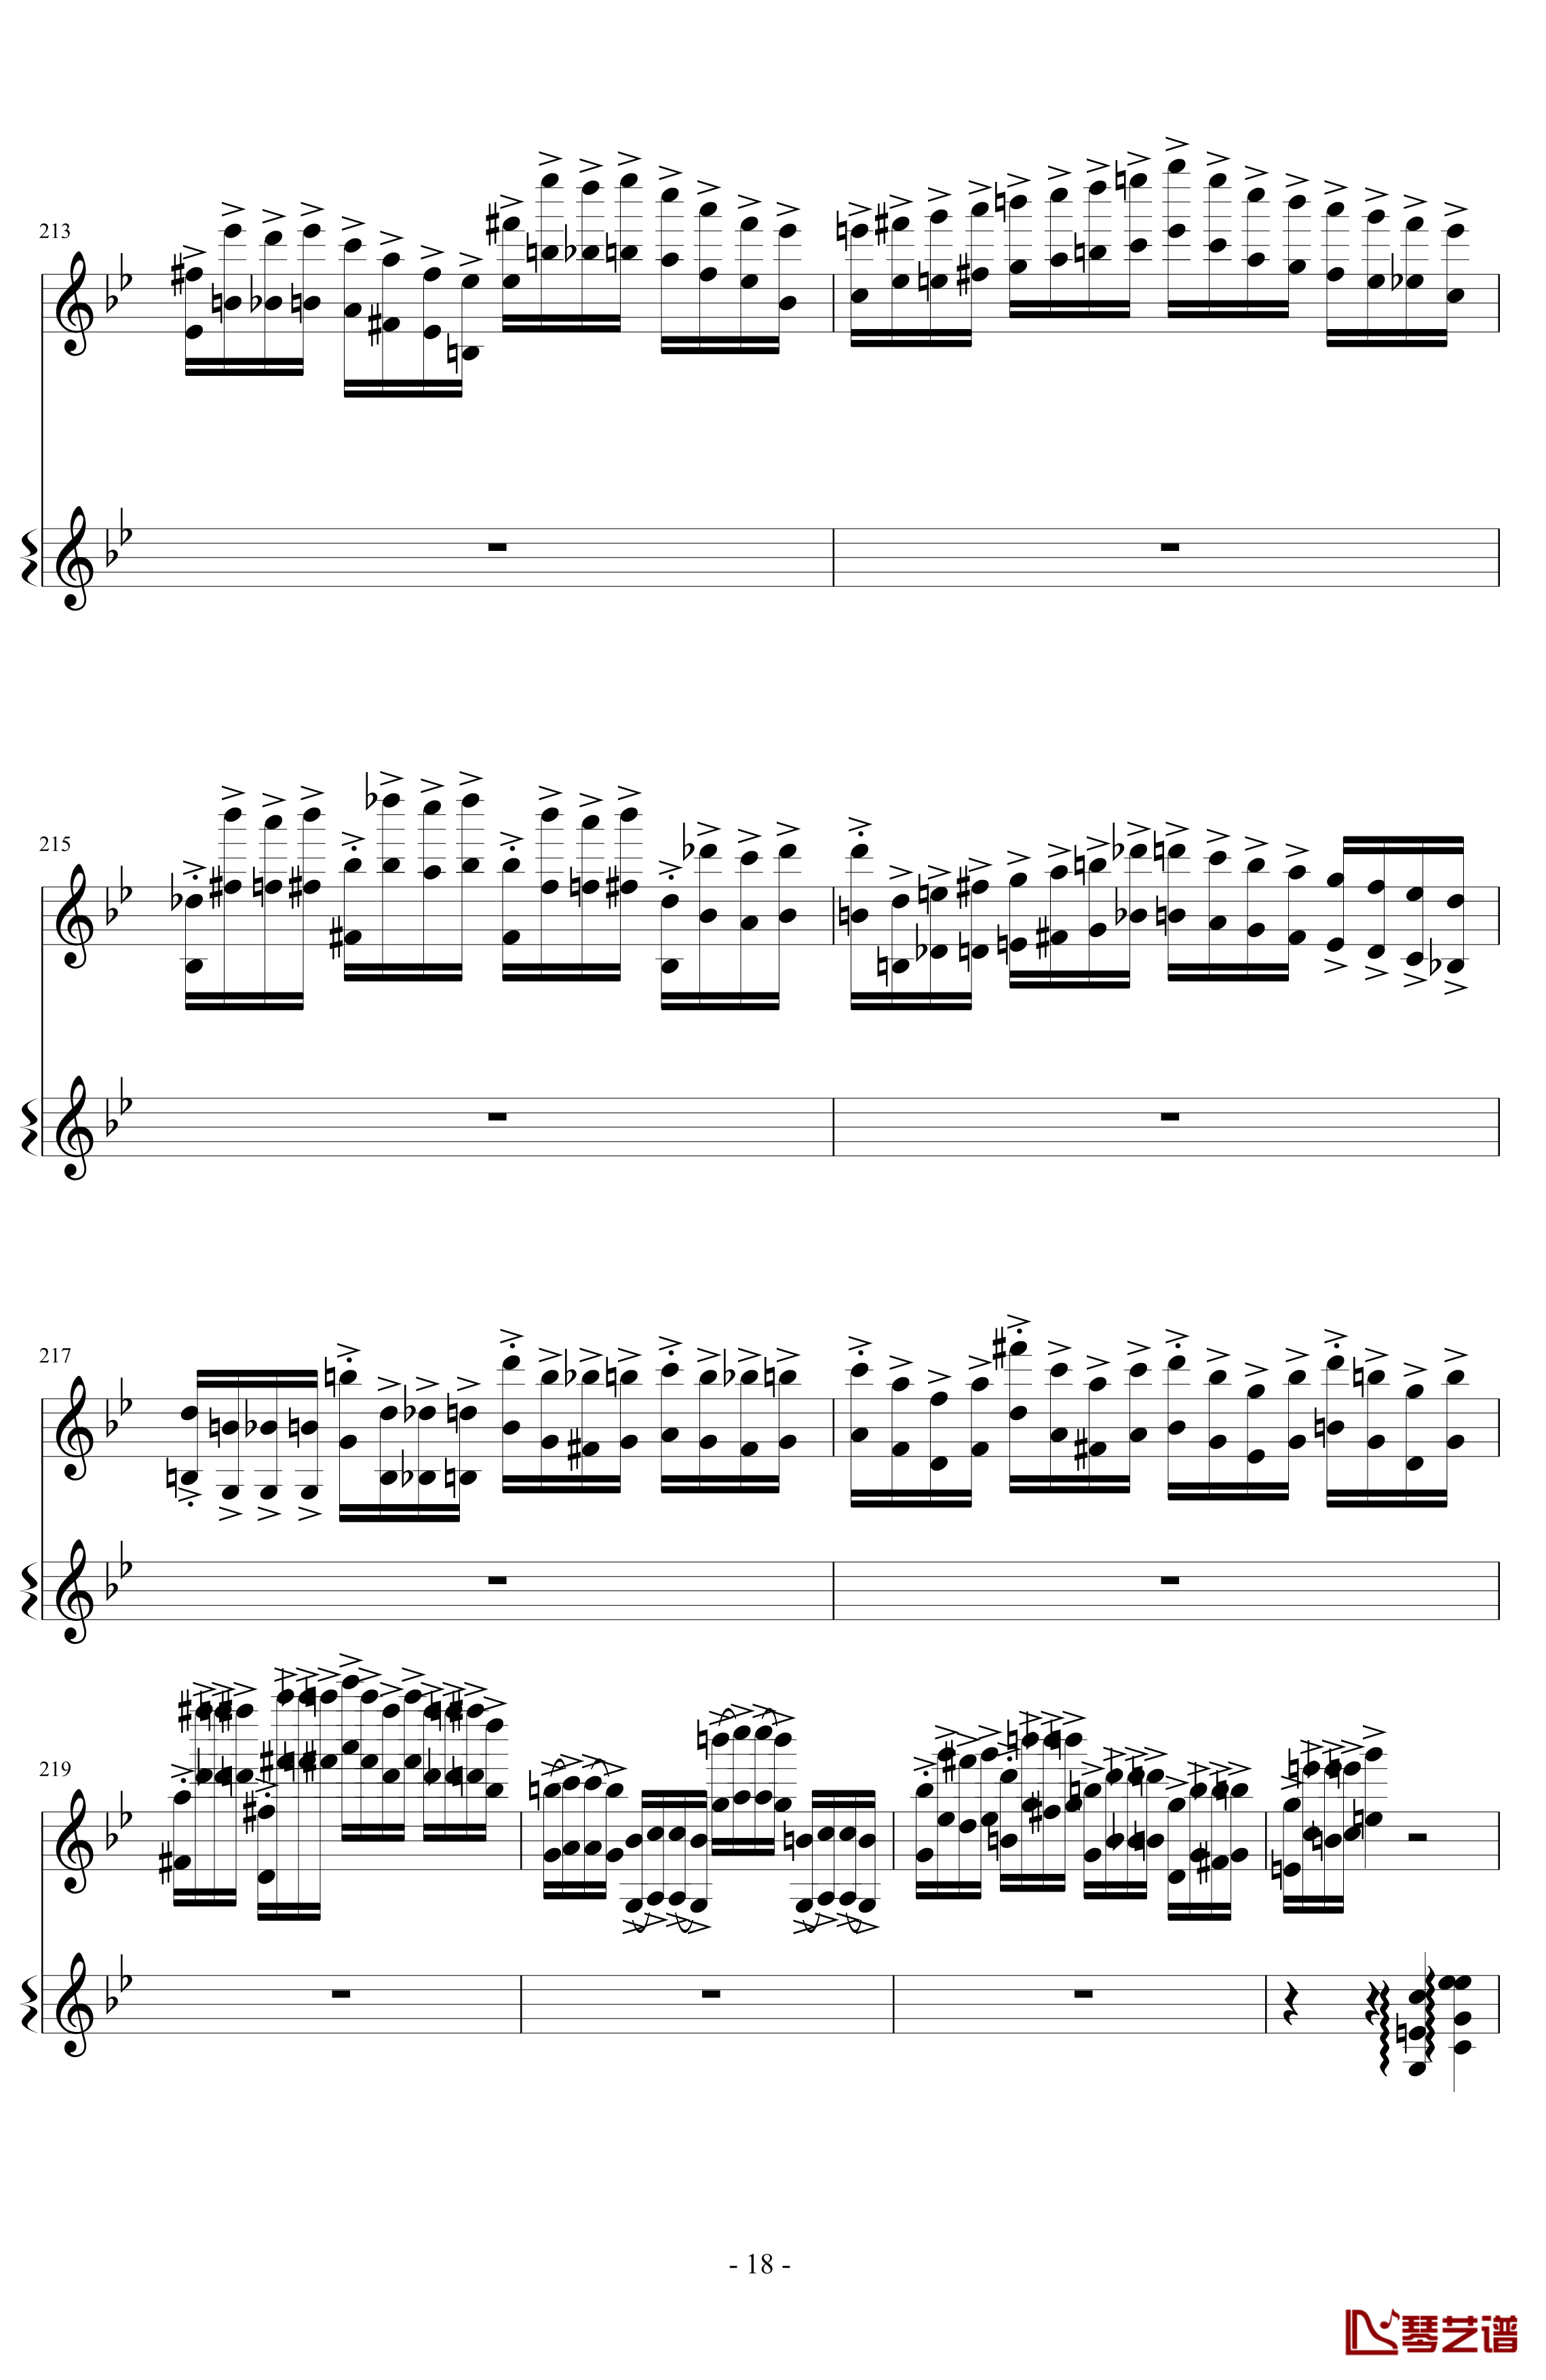 意大利国歌变奏曲钢琴谱-DXF18